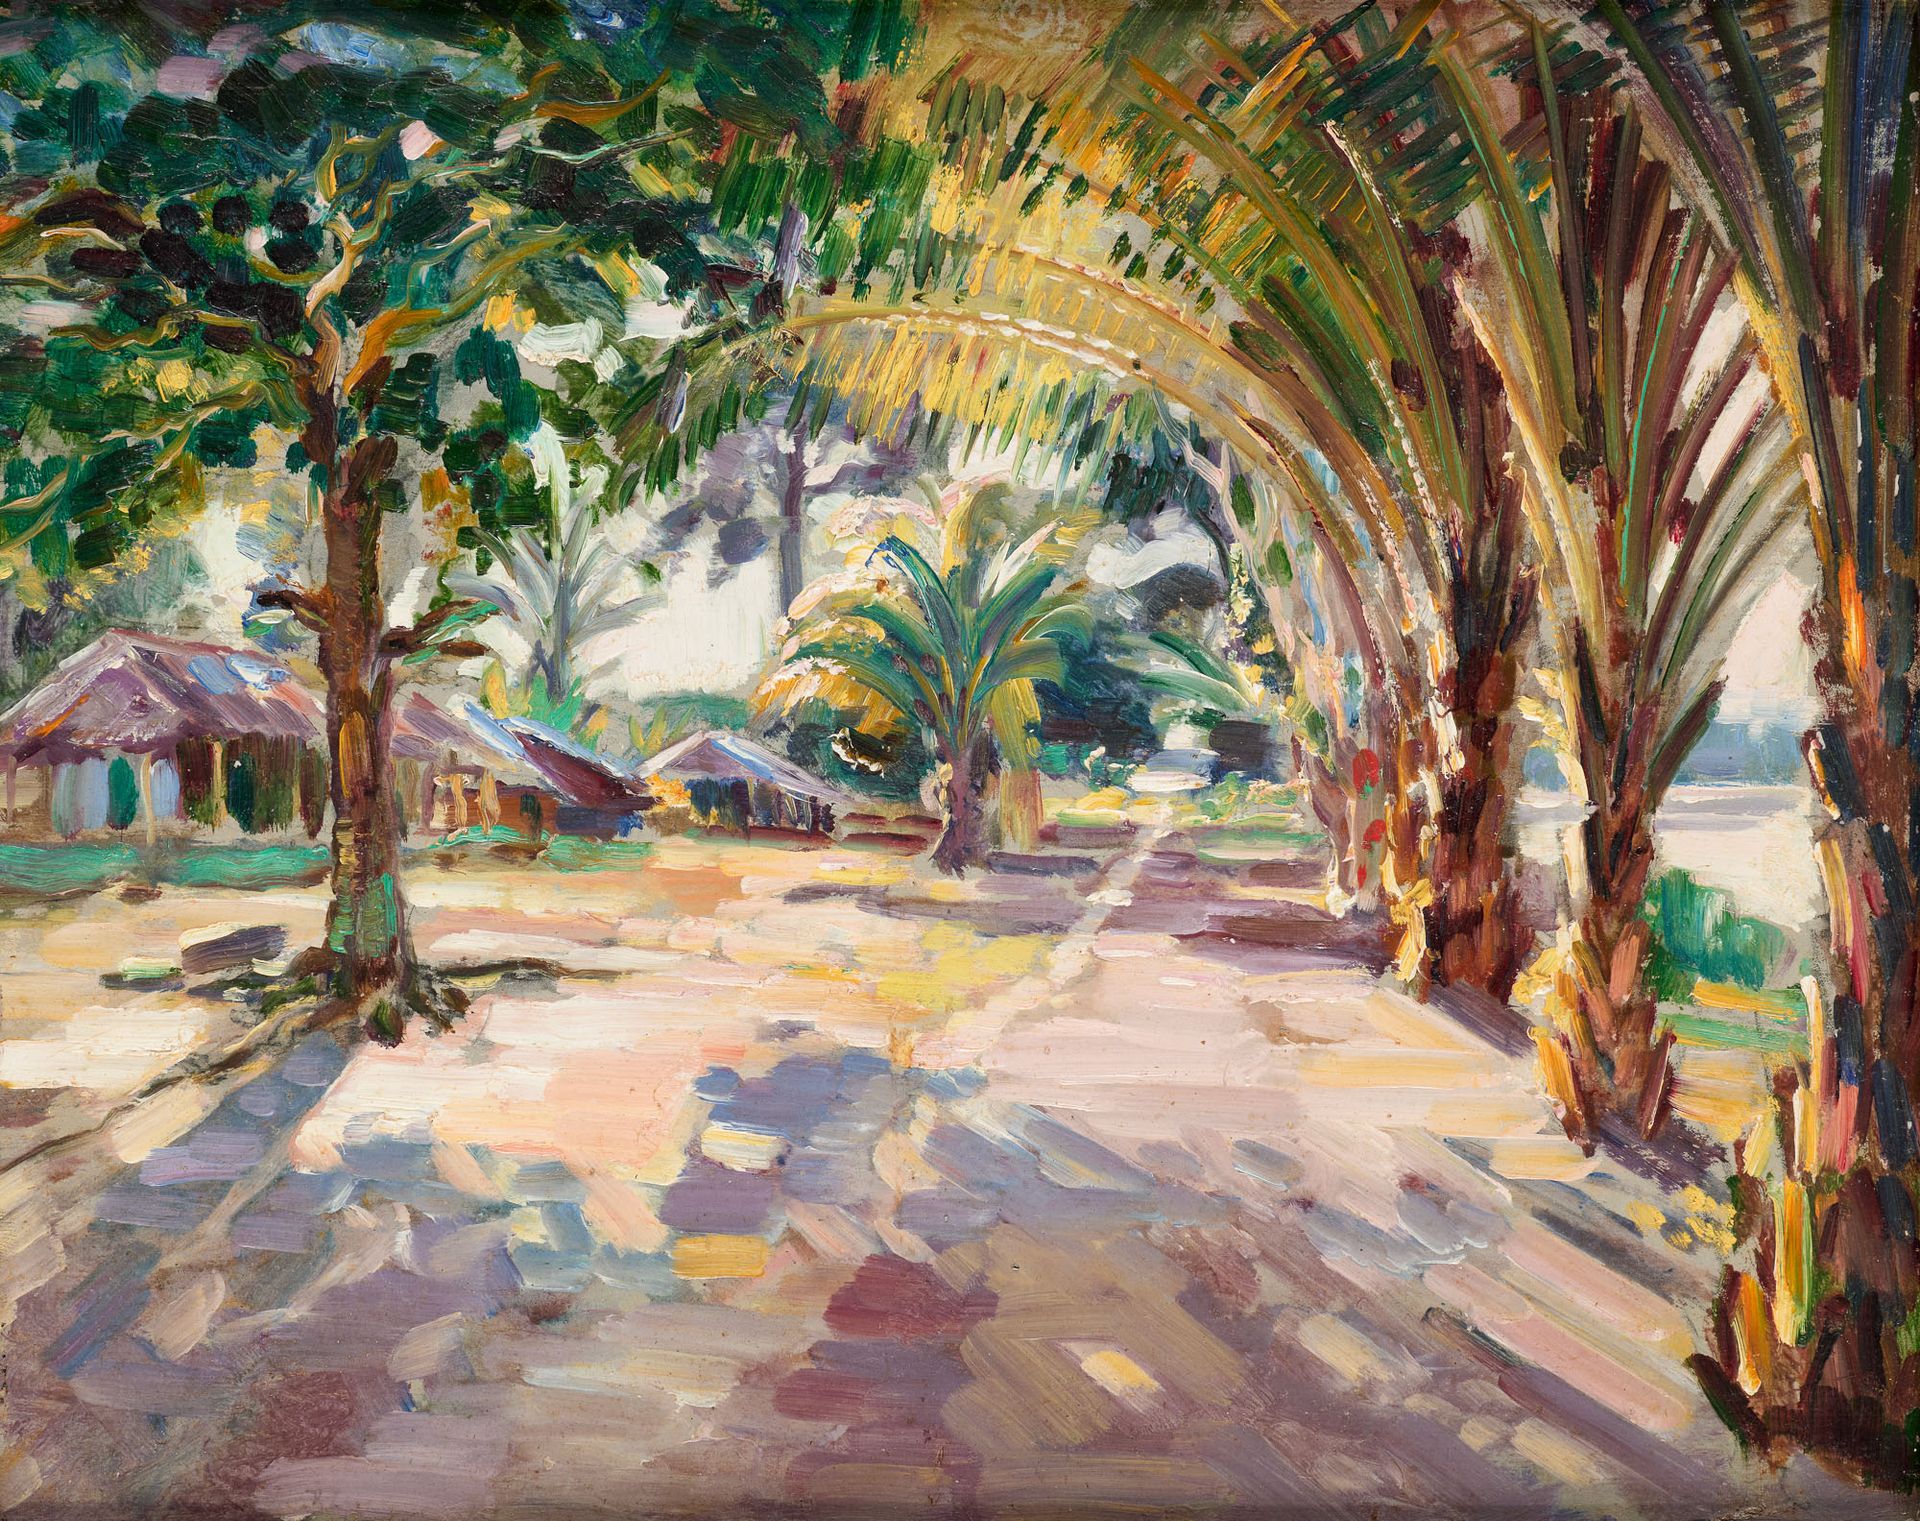 André HALLET École belge (1890-1959) 油画：科基尔哈特维尔的环境。

安德烈-哈雷特的作品，背面由基金会鉴定为1934年的作&hellip;